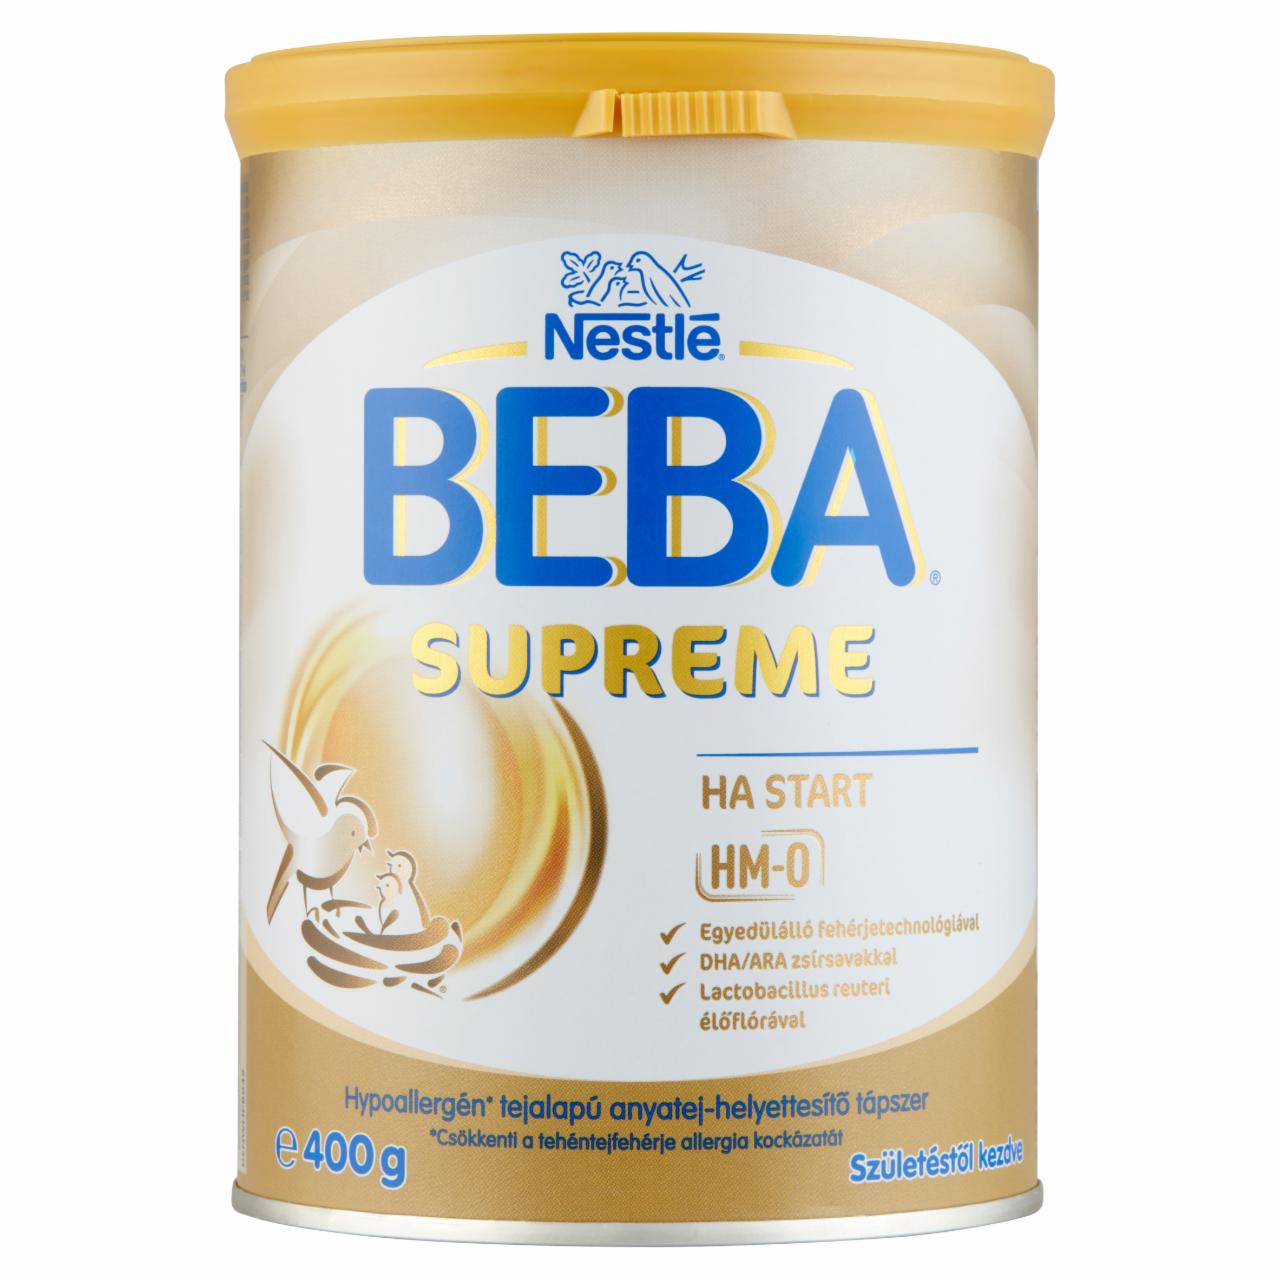 Képek - Beba Supreme HA Start hypoallergén tejalapú anyatej-helyettesítő tápszer születéstől kezdve 400 g